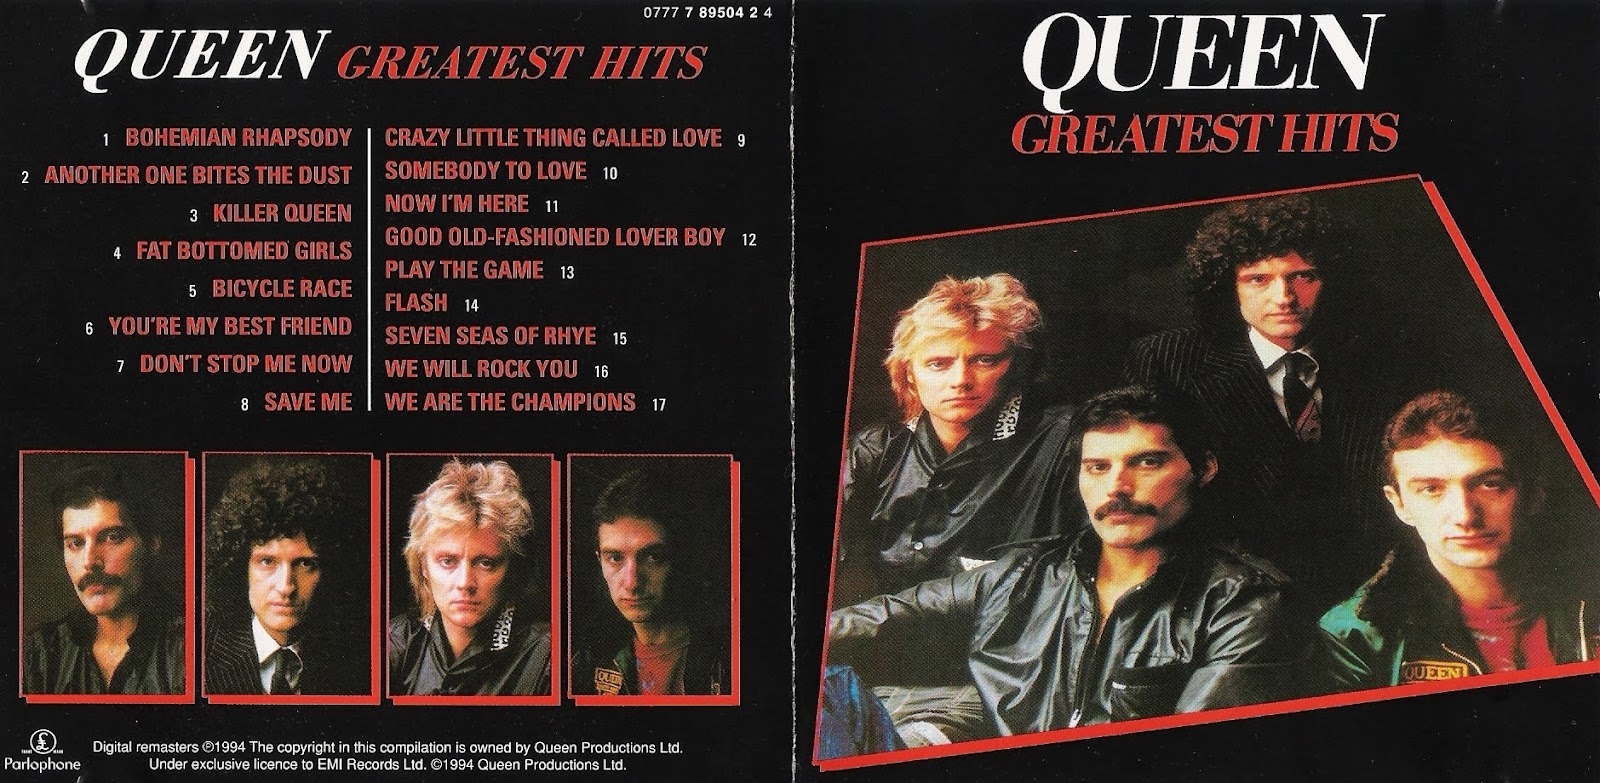 Queen best hits. Queen Greatest Hits 2 пластинка. Queen Greatest Hits 1981 CD. Queen Greatest Hits обложка. Greatest Hits III Queen.